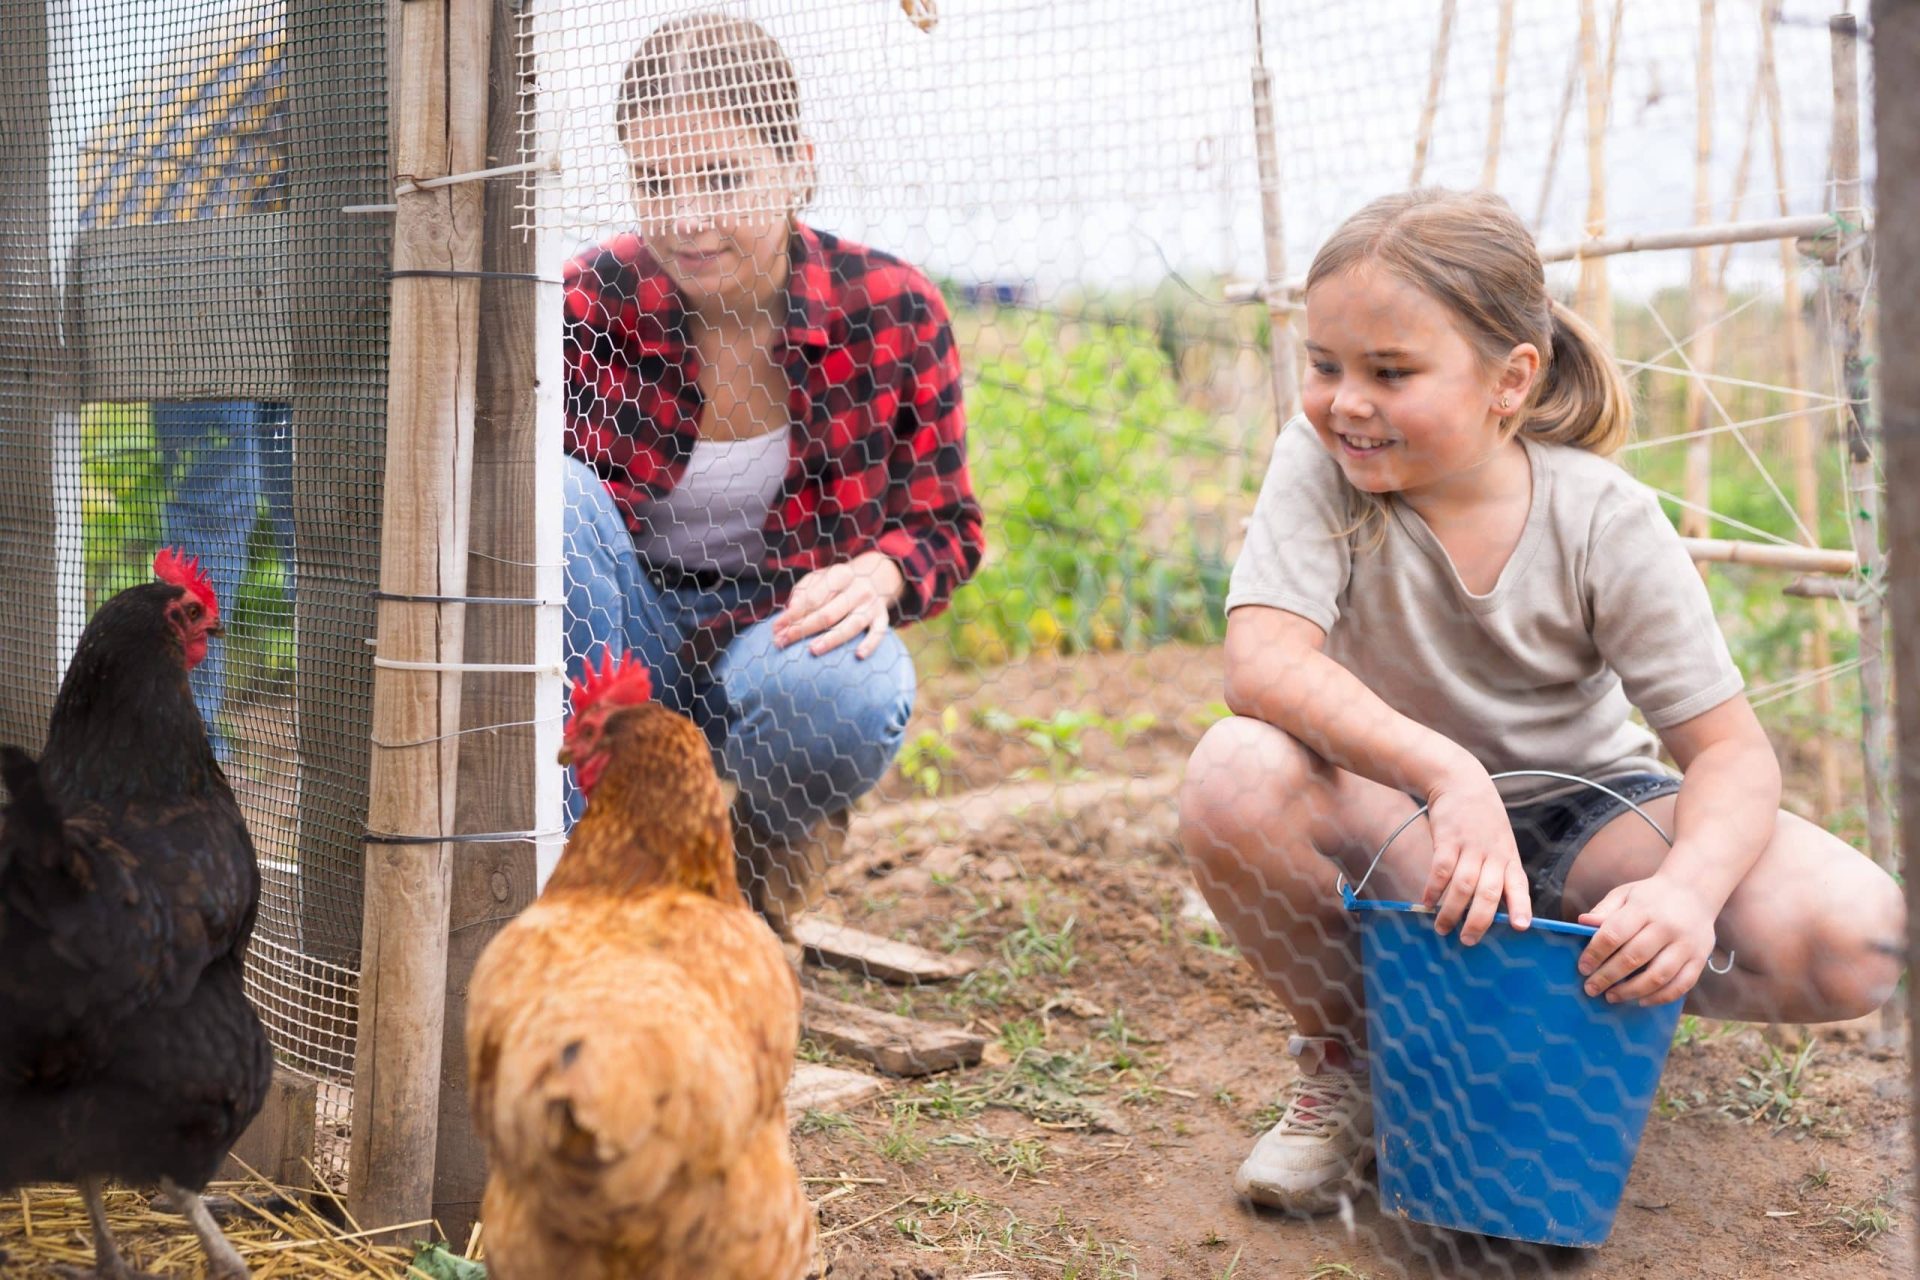 Girls feeding chickens